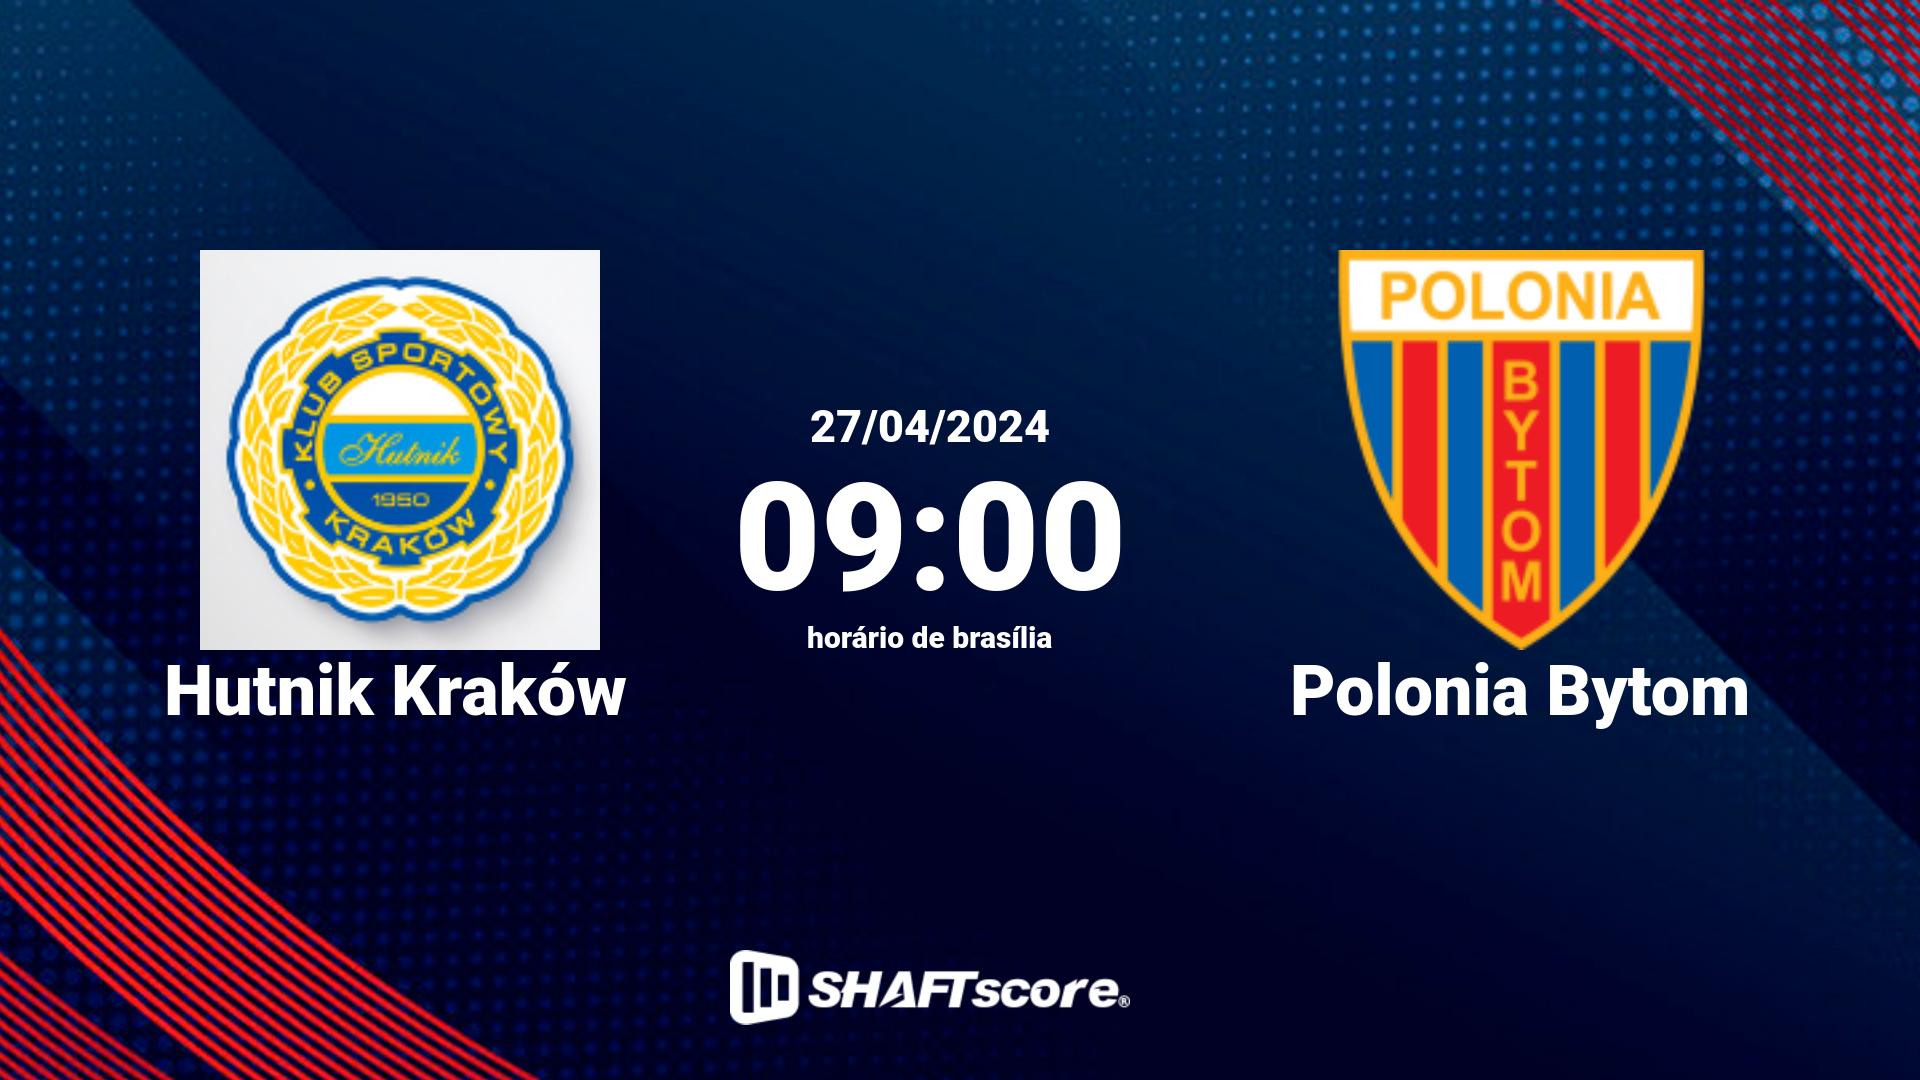 Estatísticas do jogo Hutnik Kraków vs Polonia Bytom 27.04 09:00